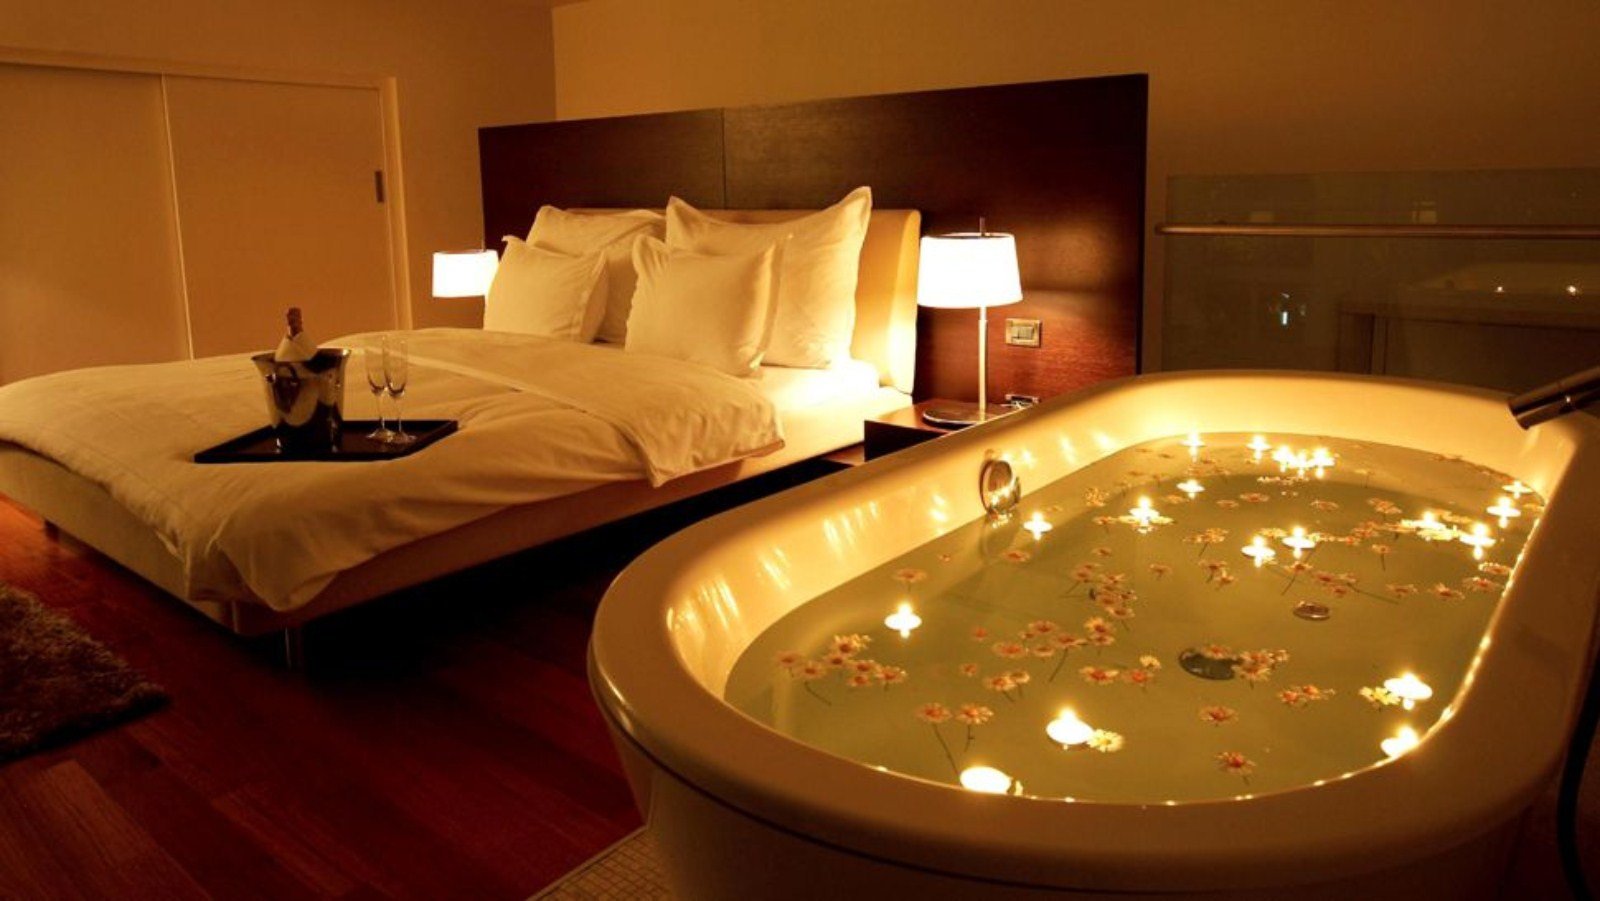 Кровать в ванной комнате. Джакузи в спальне. Комната с джакузи. Огромная кровать. Романтичная обстановка в комнате.